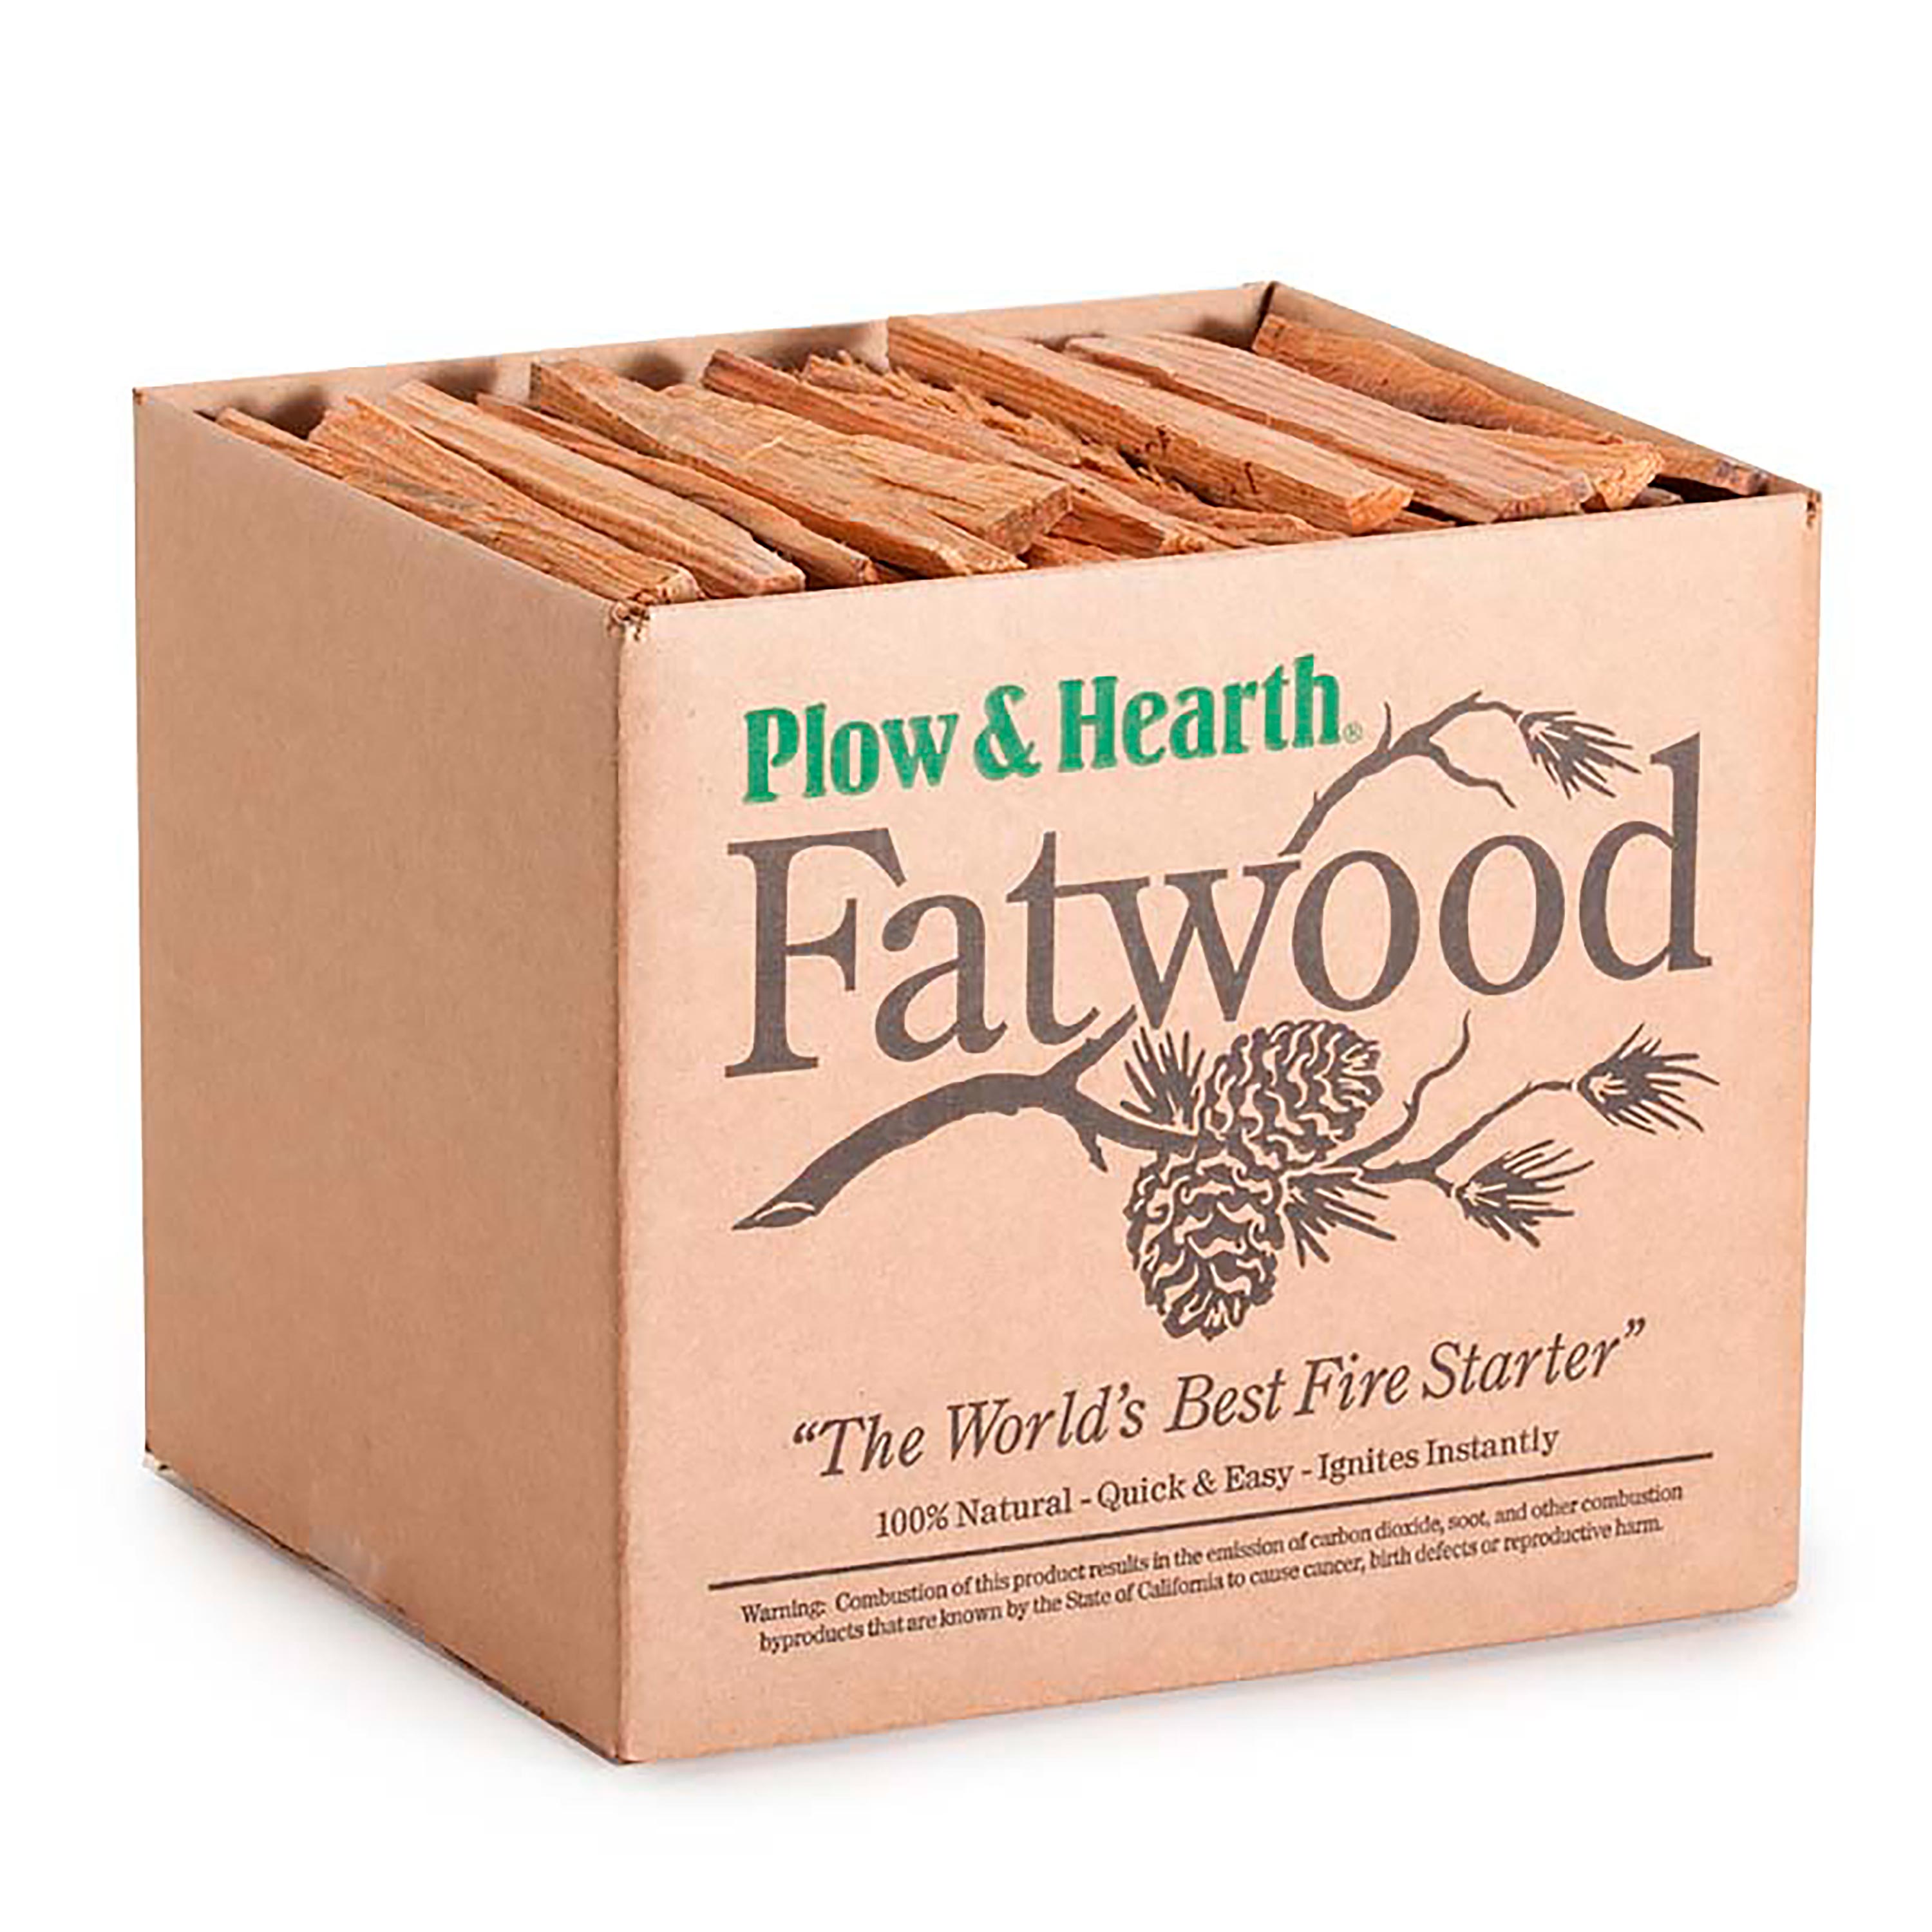 10 lb. Box Of Fatwood Kindling Fire Starter Sticks